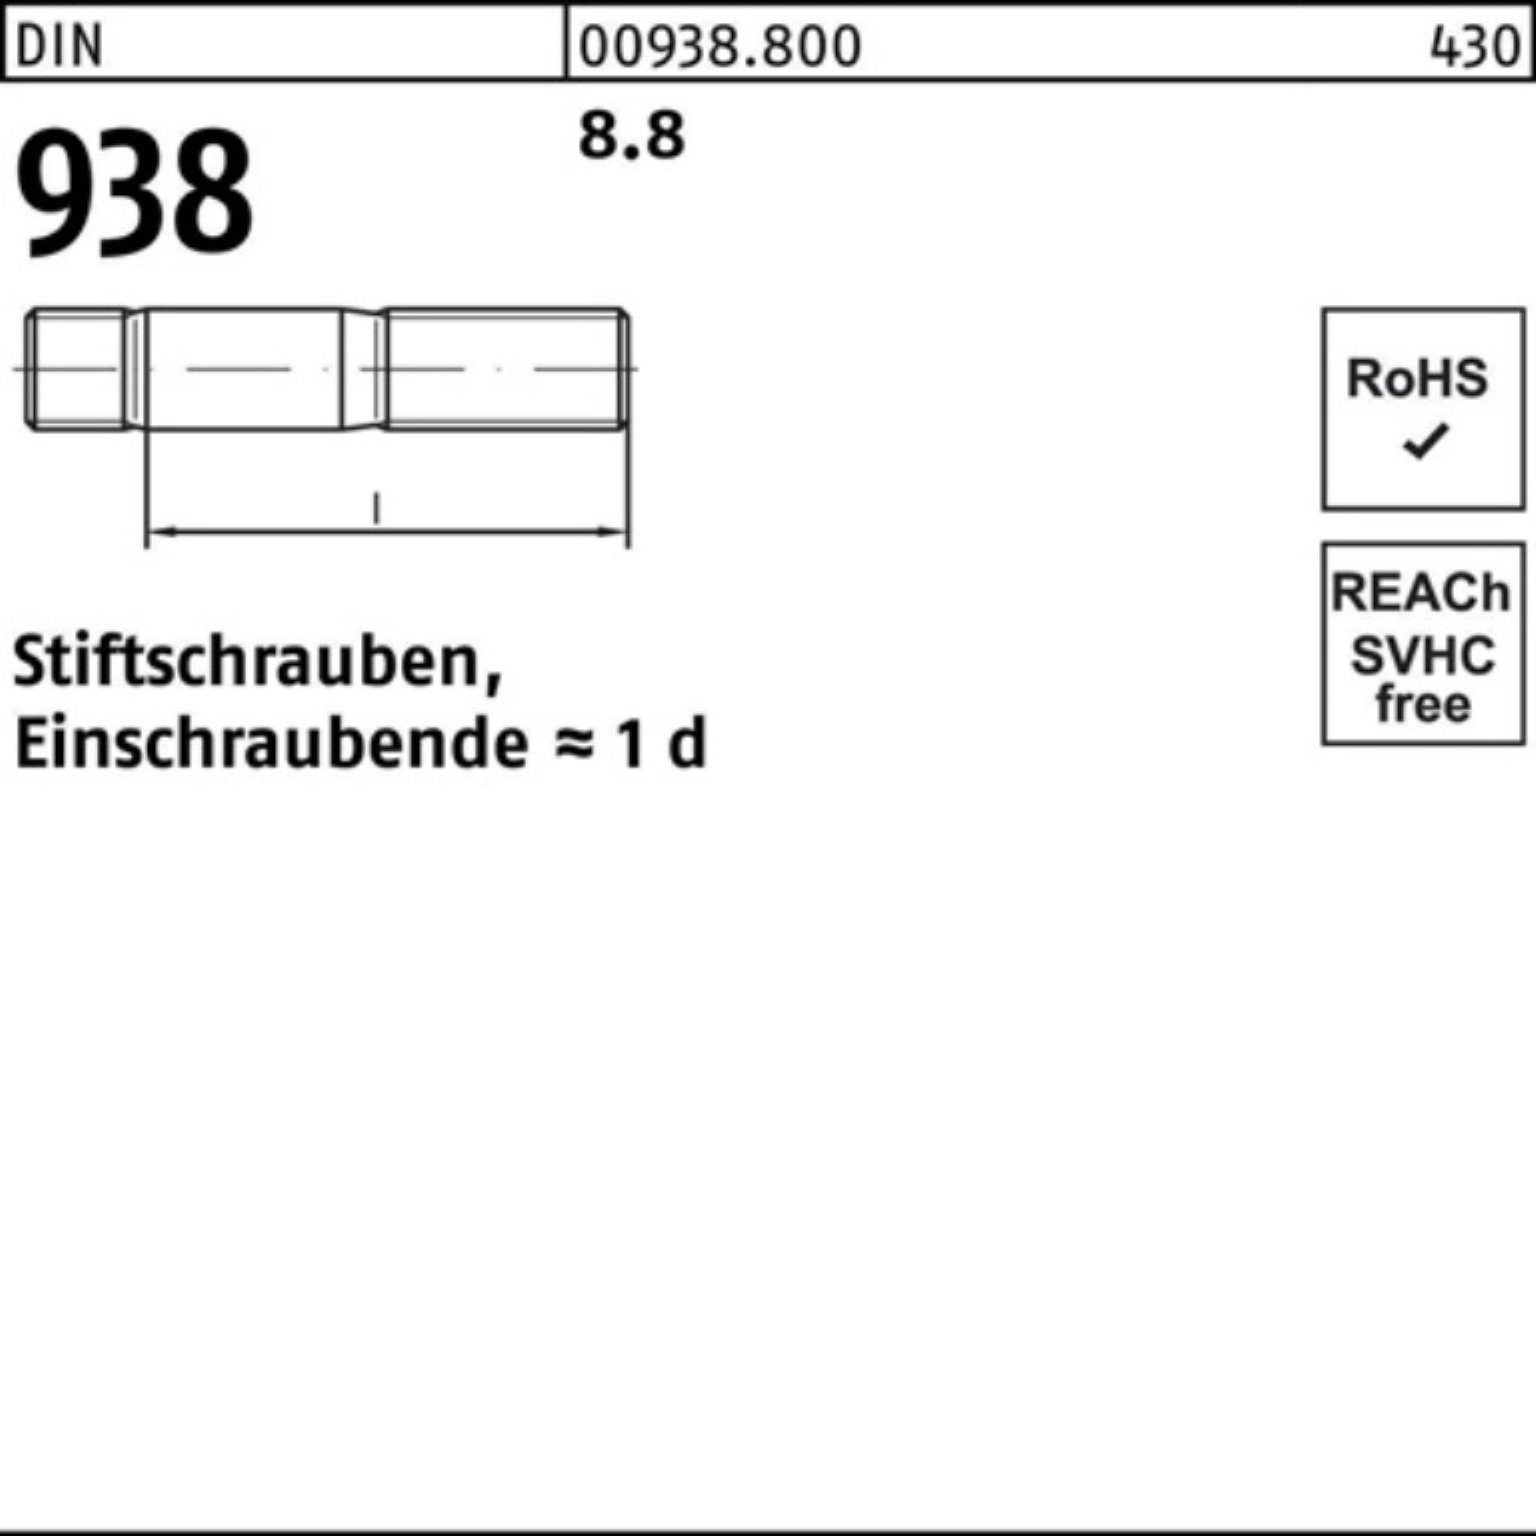 Reyher Stiftschraube 100er M24x 8.8 DIN 1 Stiftschraube DIN Pack Sti 938 938 8.8 Stück 130